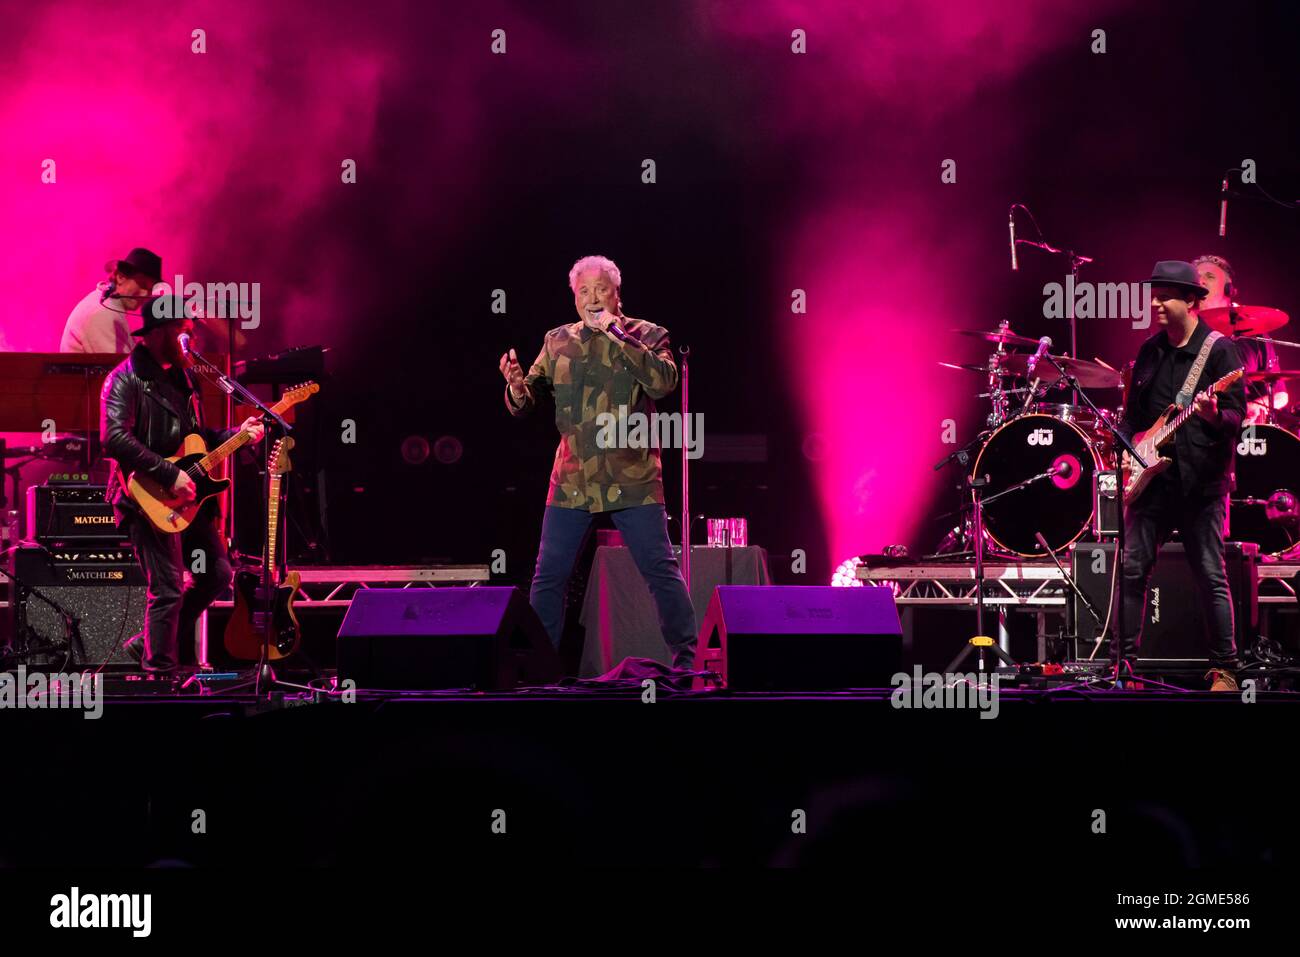 Newport, Isle of Wight, Großbritannien, Freitag, 17. September 2021 Tom Jones tritt live auf dem Isle of Wight Festival Seaclose Park auf. Kredit: DavidJensen / Empics Unterhaltung / Alamy Live Nachrichten Stockfoto